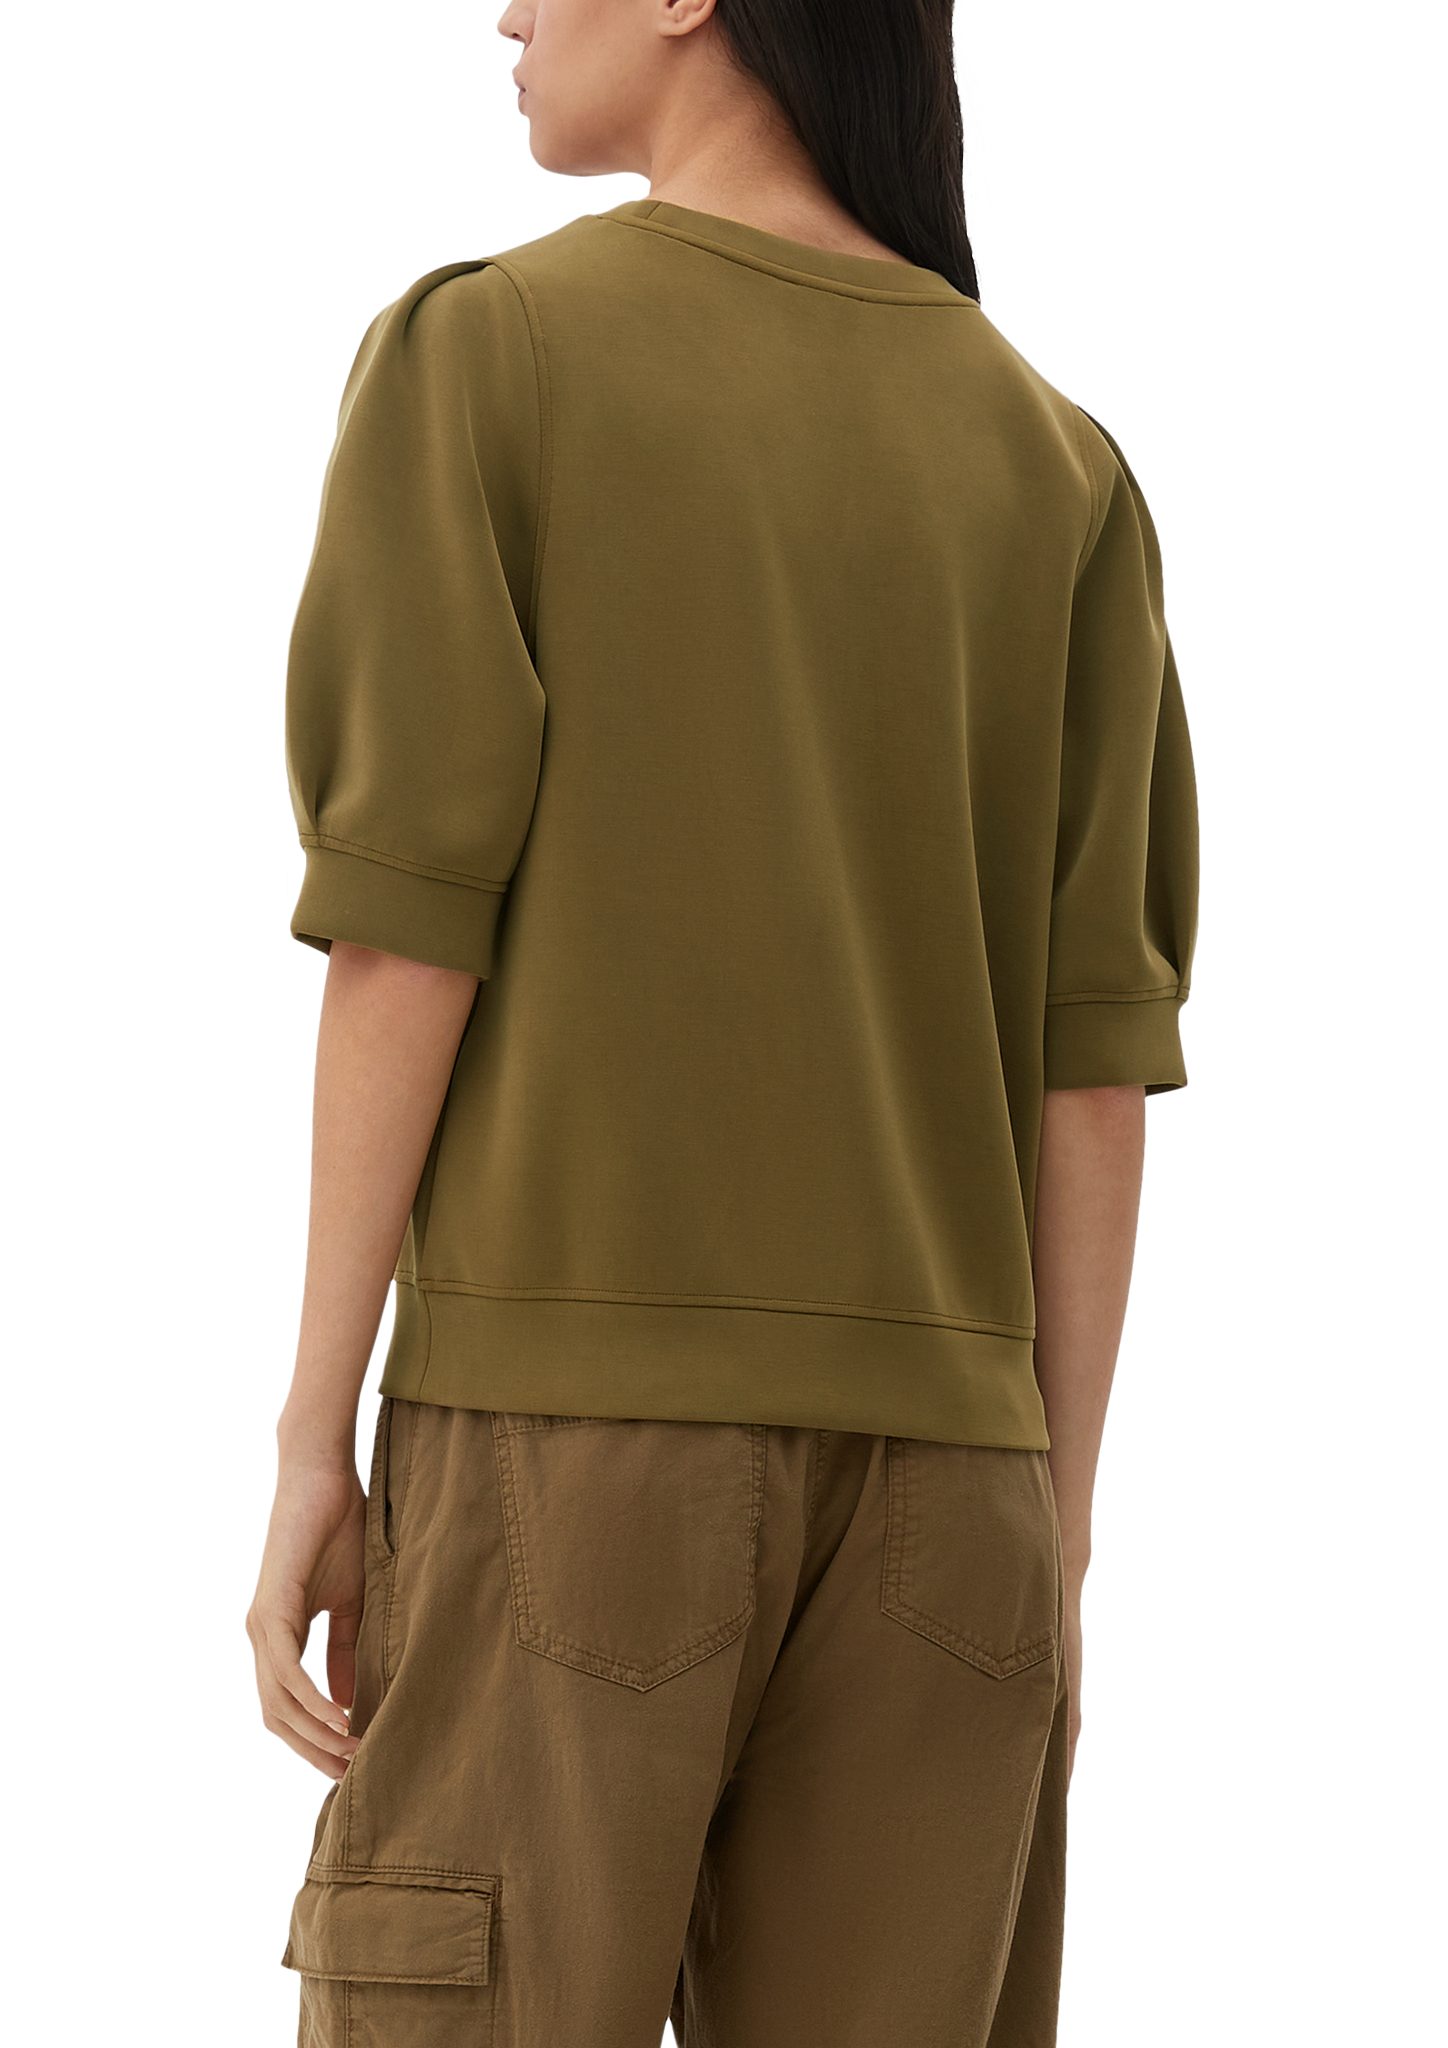 Arm Raffung s.Oliver mit halblangem olivgrün Sweatshirt Sweatshirt